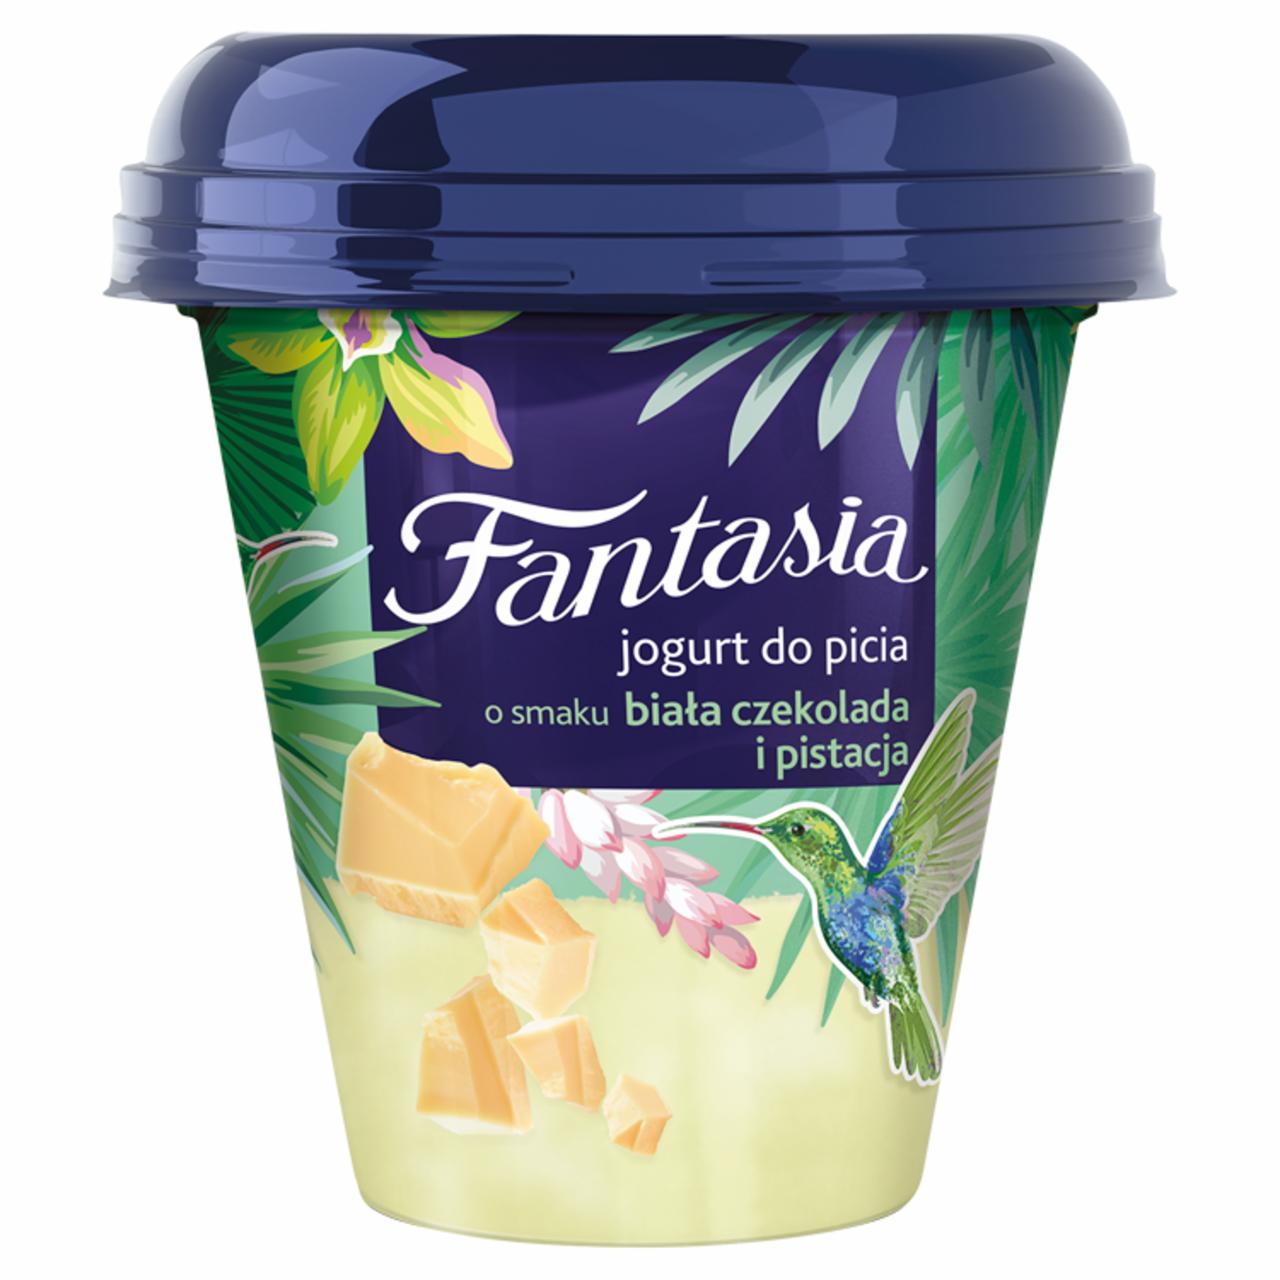 Zdjęcia - Danone Fantasia Jogurt do picia o smaku biała czekolada i pistacja 240 g